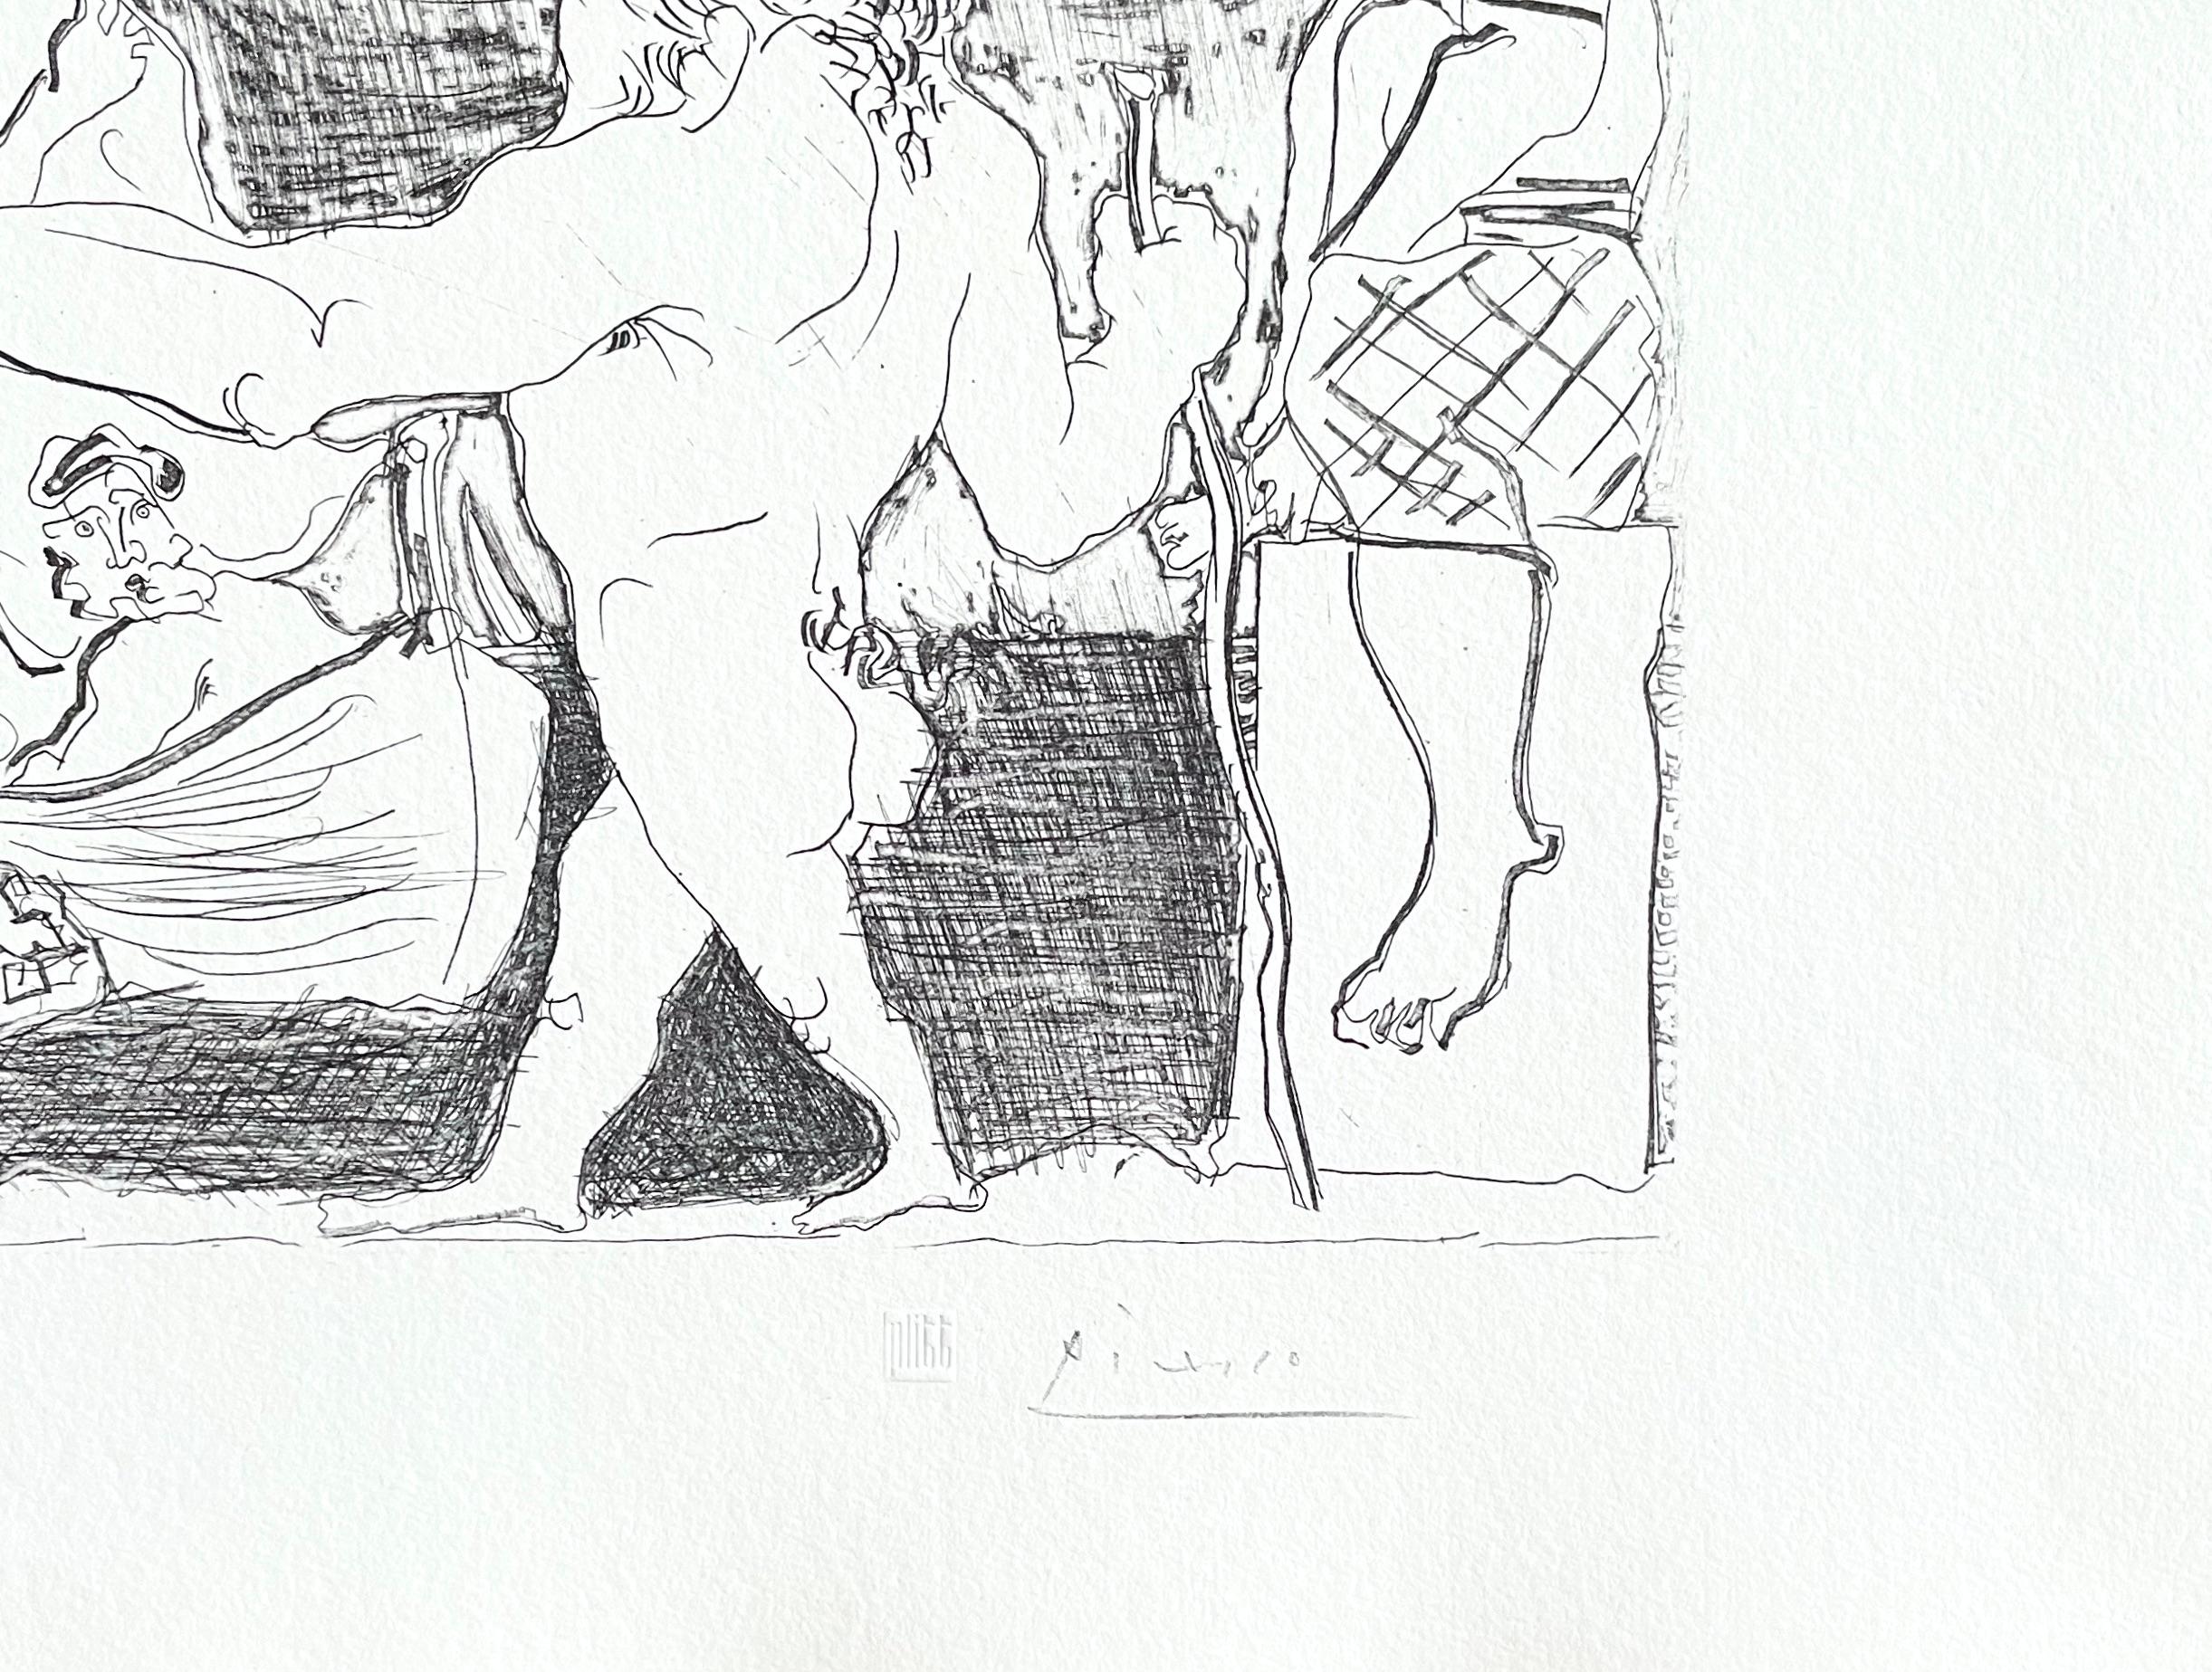 Picasso, Minotaure aveugle guidé dans la Nuit par une Petite (after) - Cubist Print by Pablo Picasso